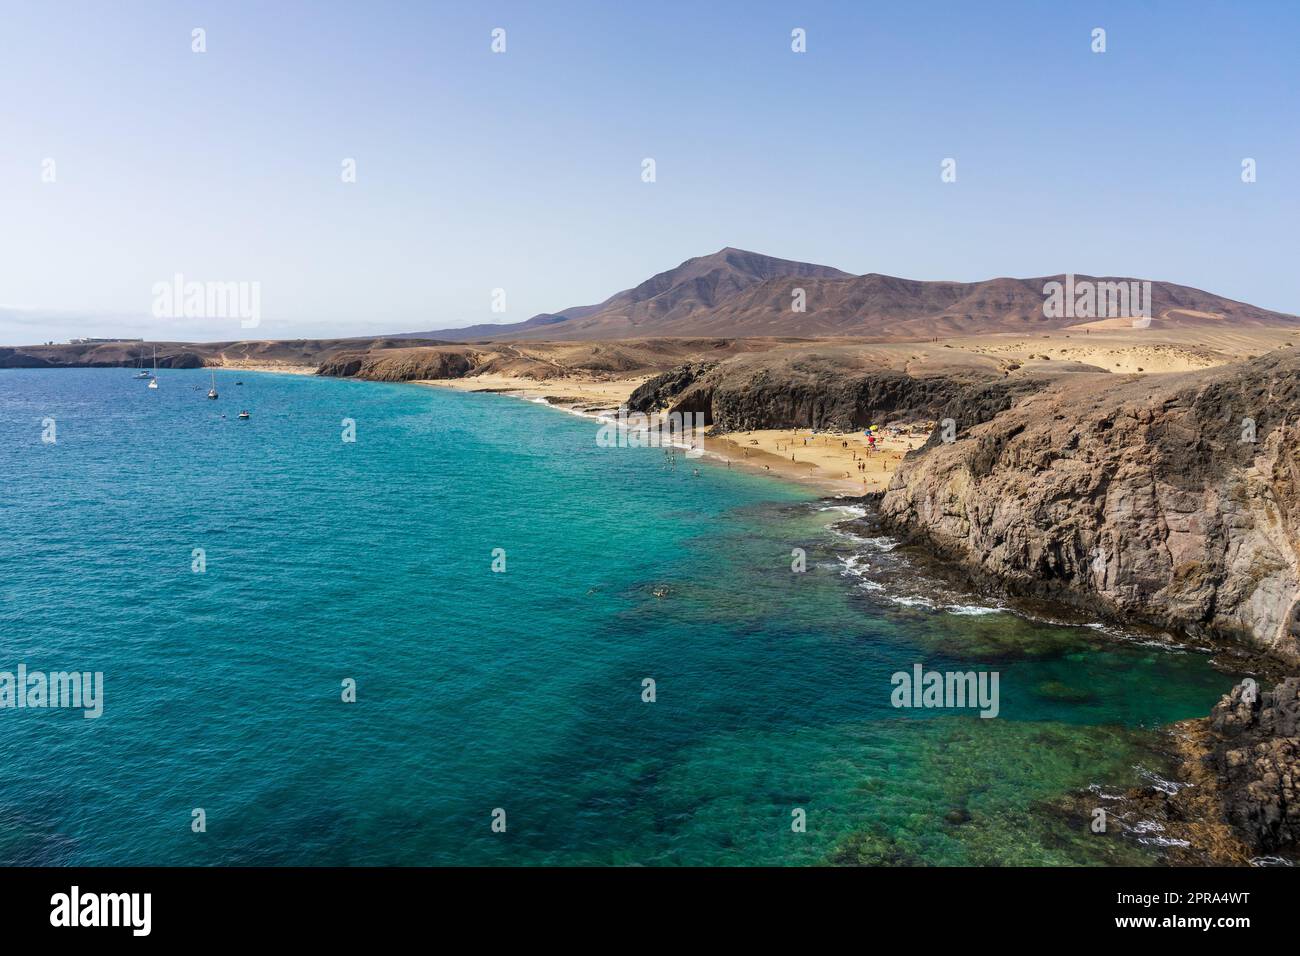 Playa de la Cera, Playa del Pozo et Playa Mujeres sont des plages populaires et belles à Lanzarote, îles Canaries, Espagne. Banque D'Images